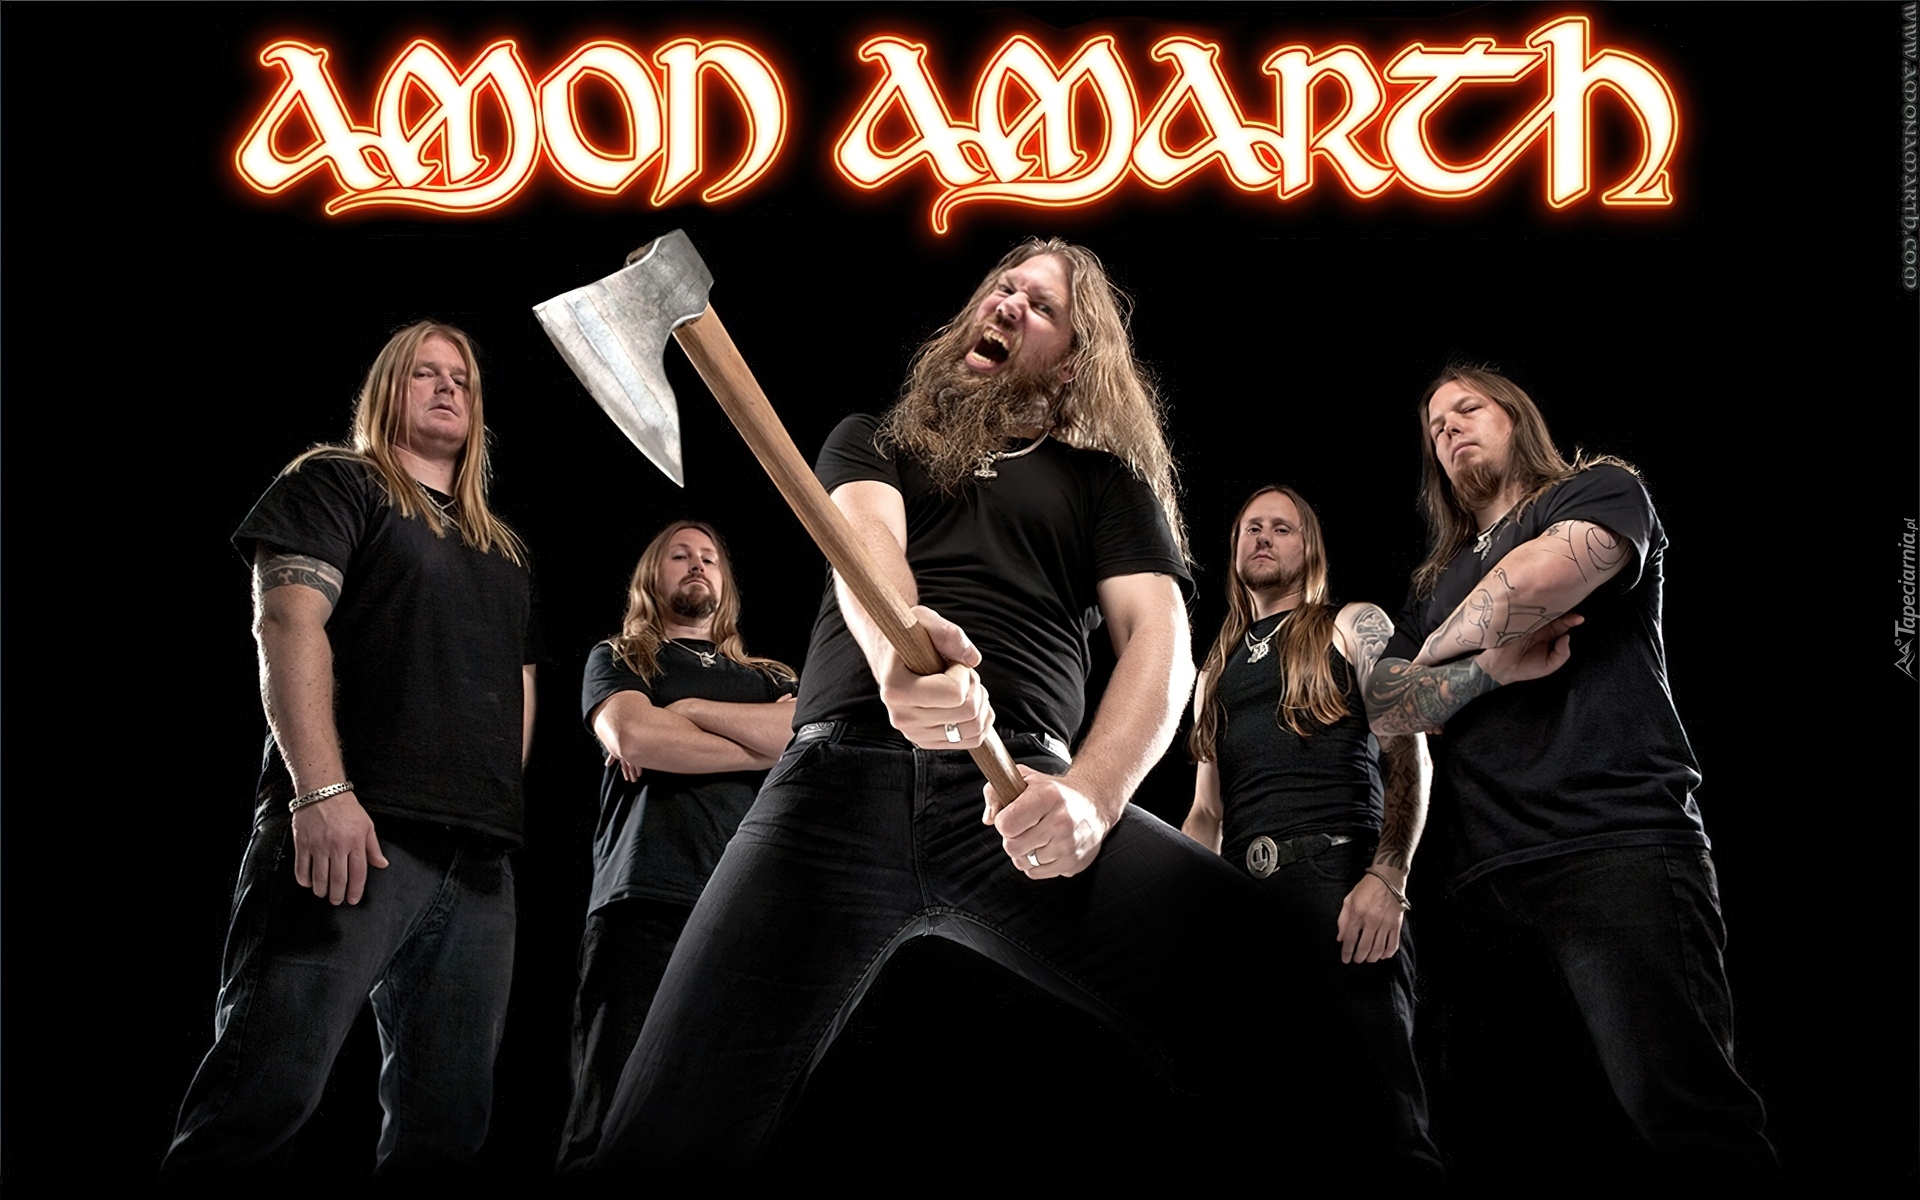 Amon Amarth, Zespół, Muzyczny, Death Rock